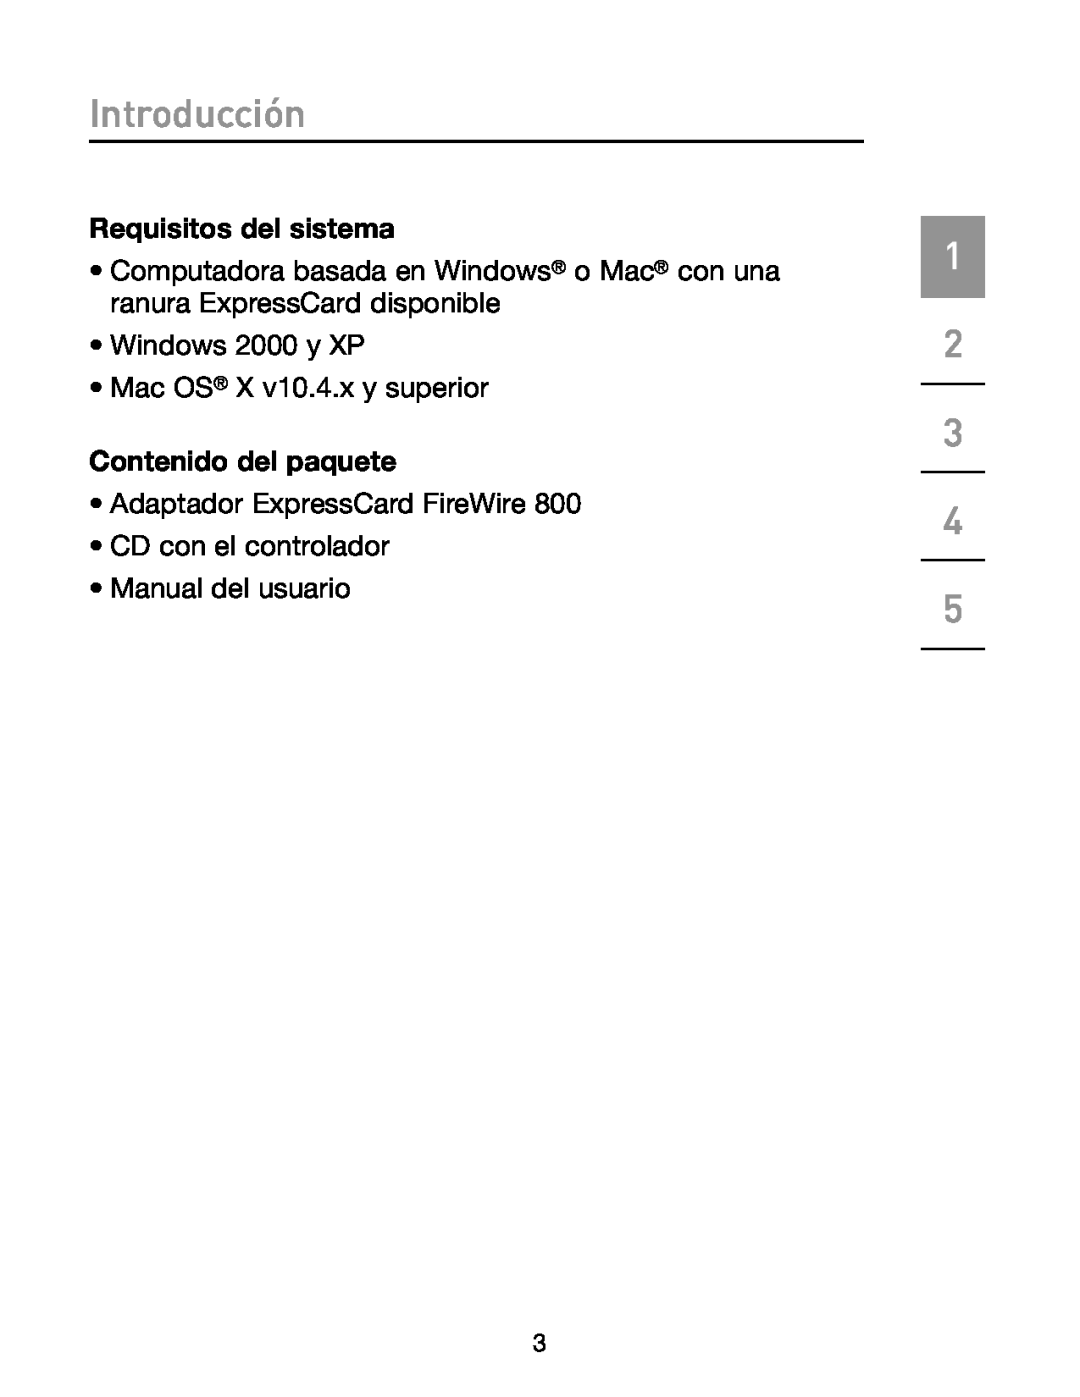 Belkin F5U514 Requisitos del sistema, Contenido del paquete, Introducción, Windows 2000 y XP Mac OS X v10.4.x y superior 